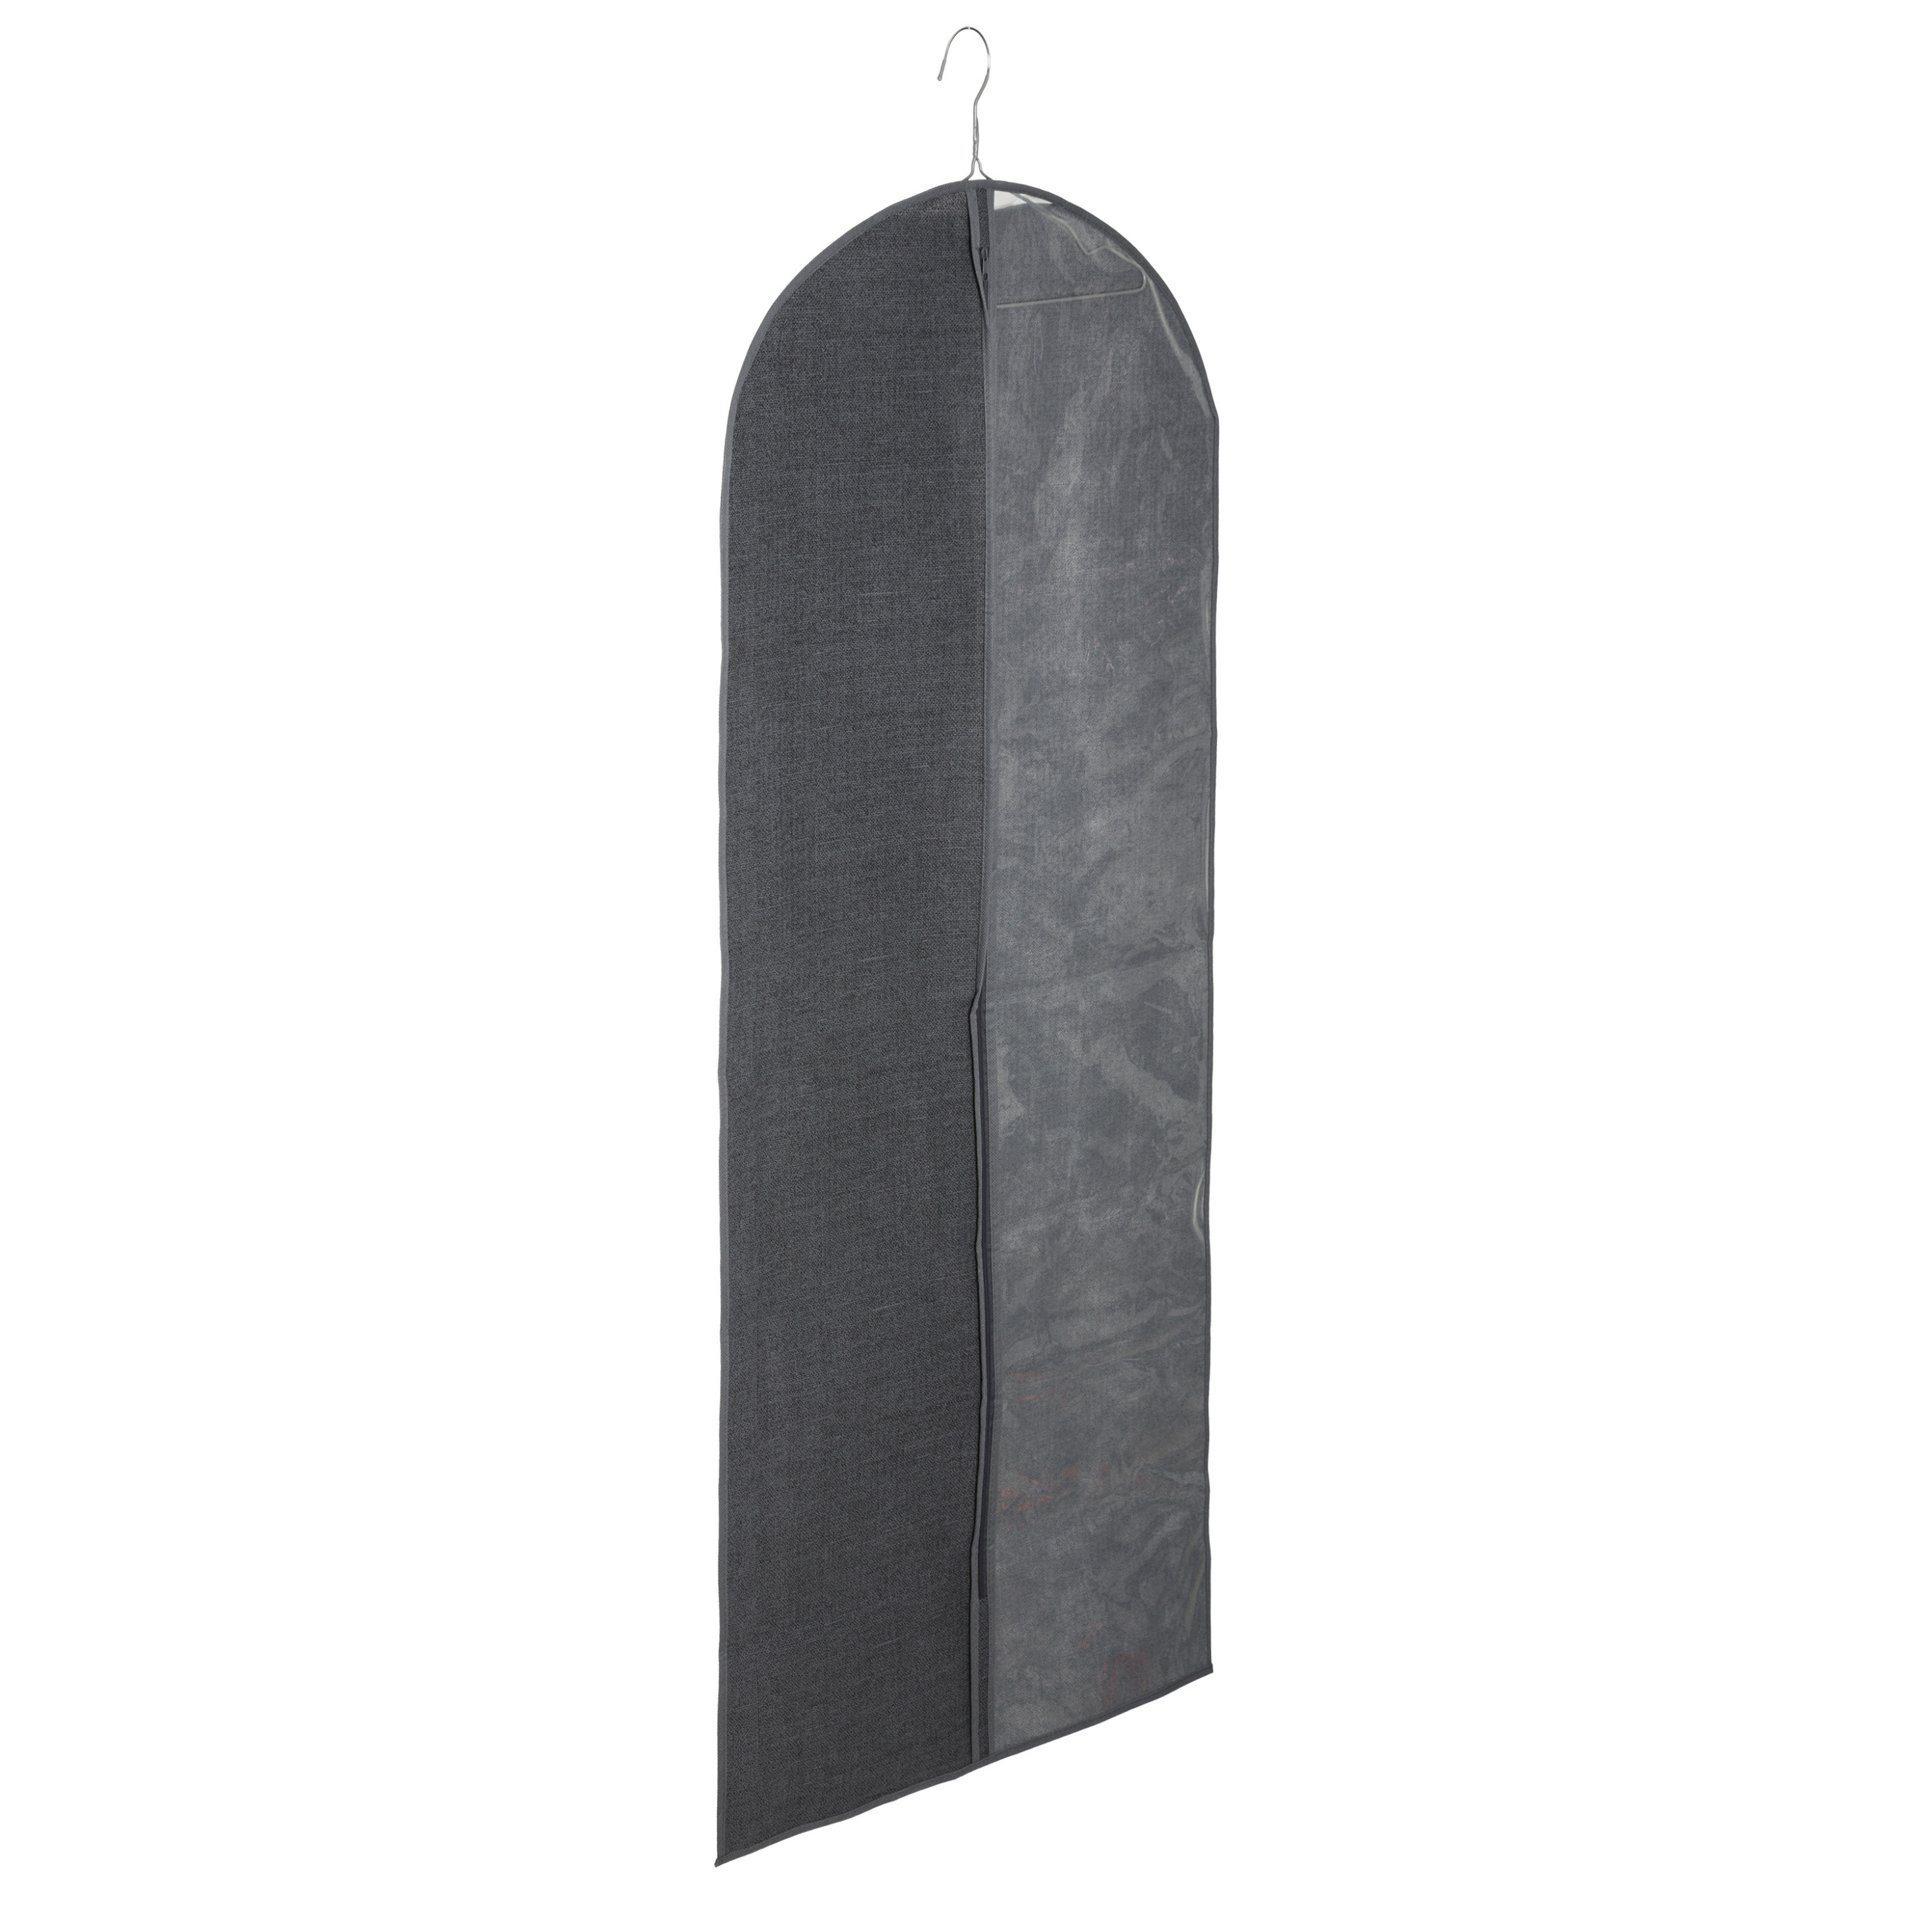 Kleding-beschermhoes linnen grijs 130 cm